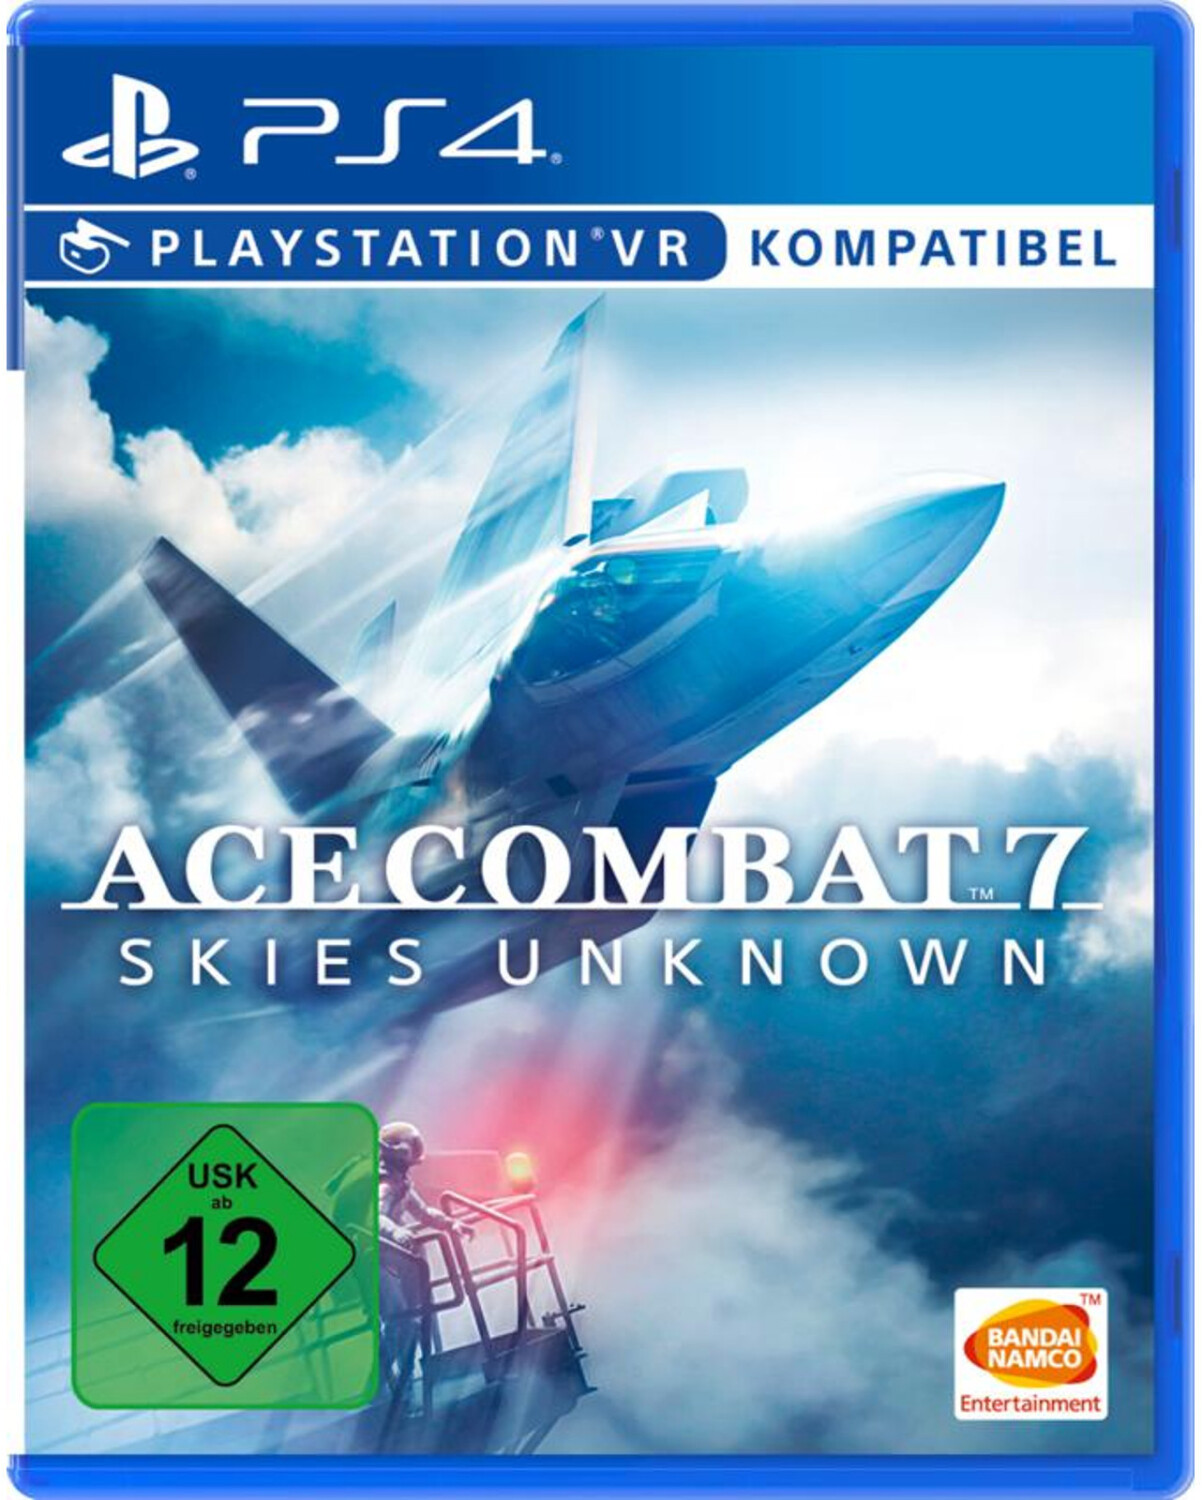 Ace combat 7 купить. Ace Combat 7 ps4. Диск ps4 Ace Combat 7: Skies Unknown. Авиасимулятор ps4 Ace Combat 7. Ace Combat 7 Skies Unknown обложка.